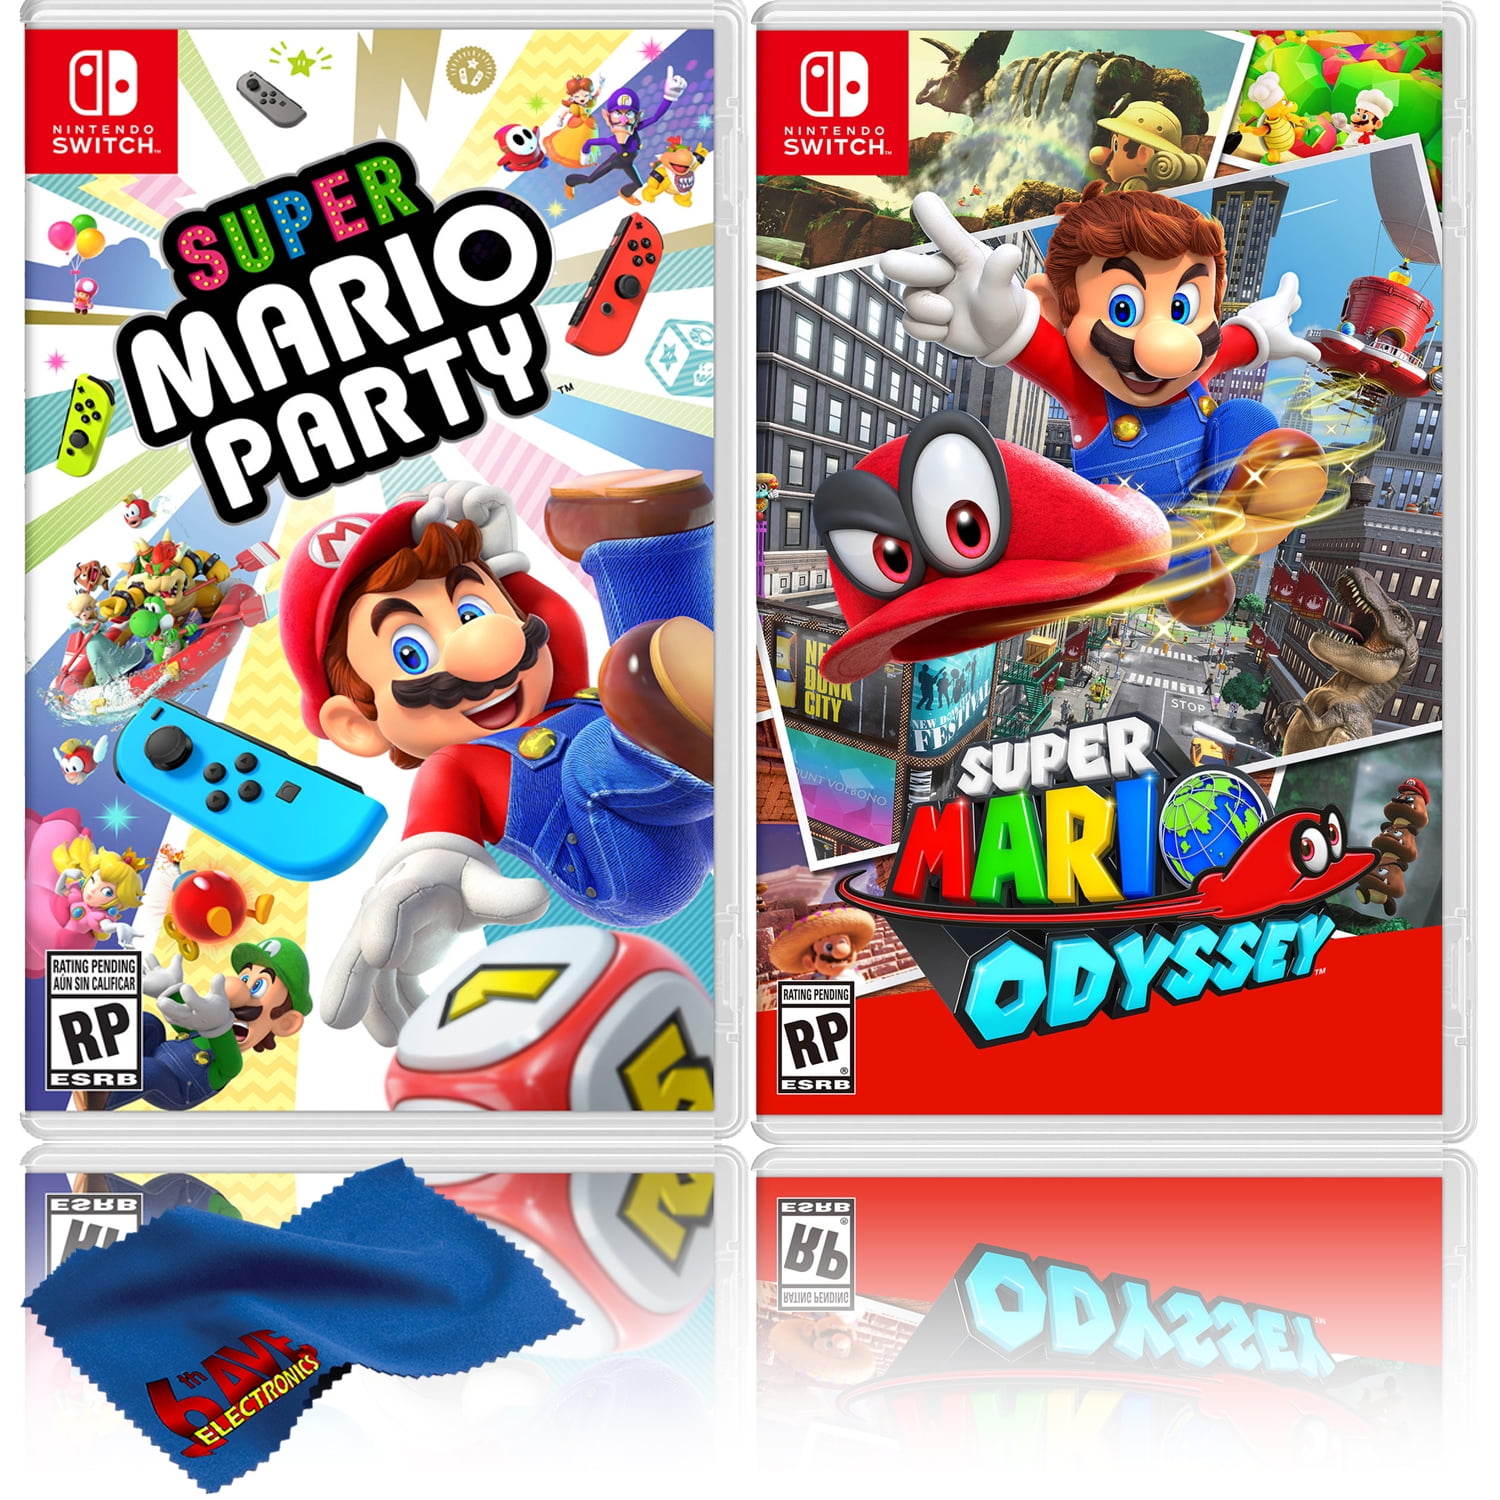 Surichinmoi Blind vriendelijk Super Mario Party + Super Mario Odyssey - Two Game Bundle - Nintendo Switch  - Walmart.com